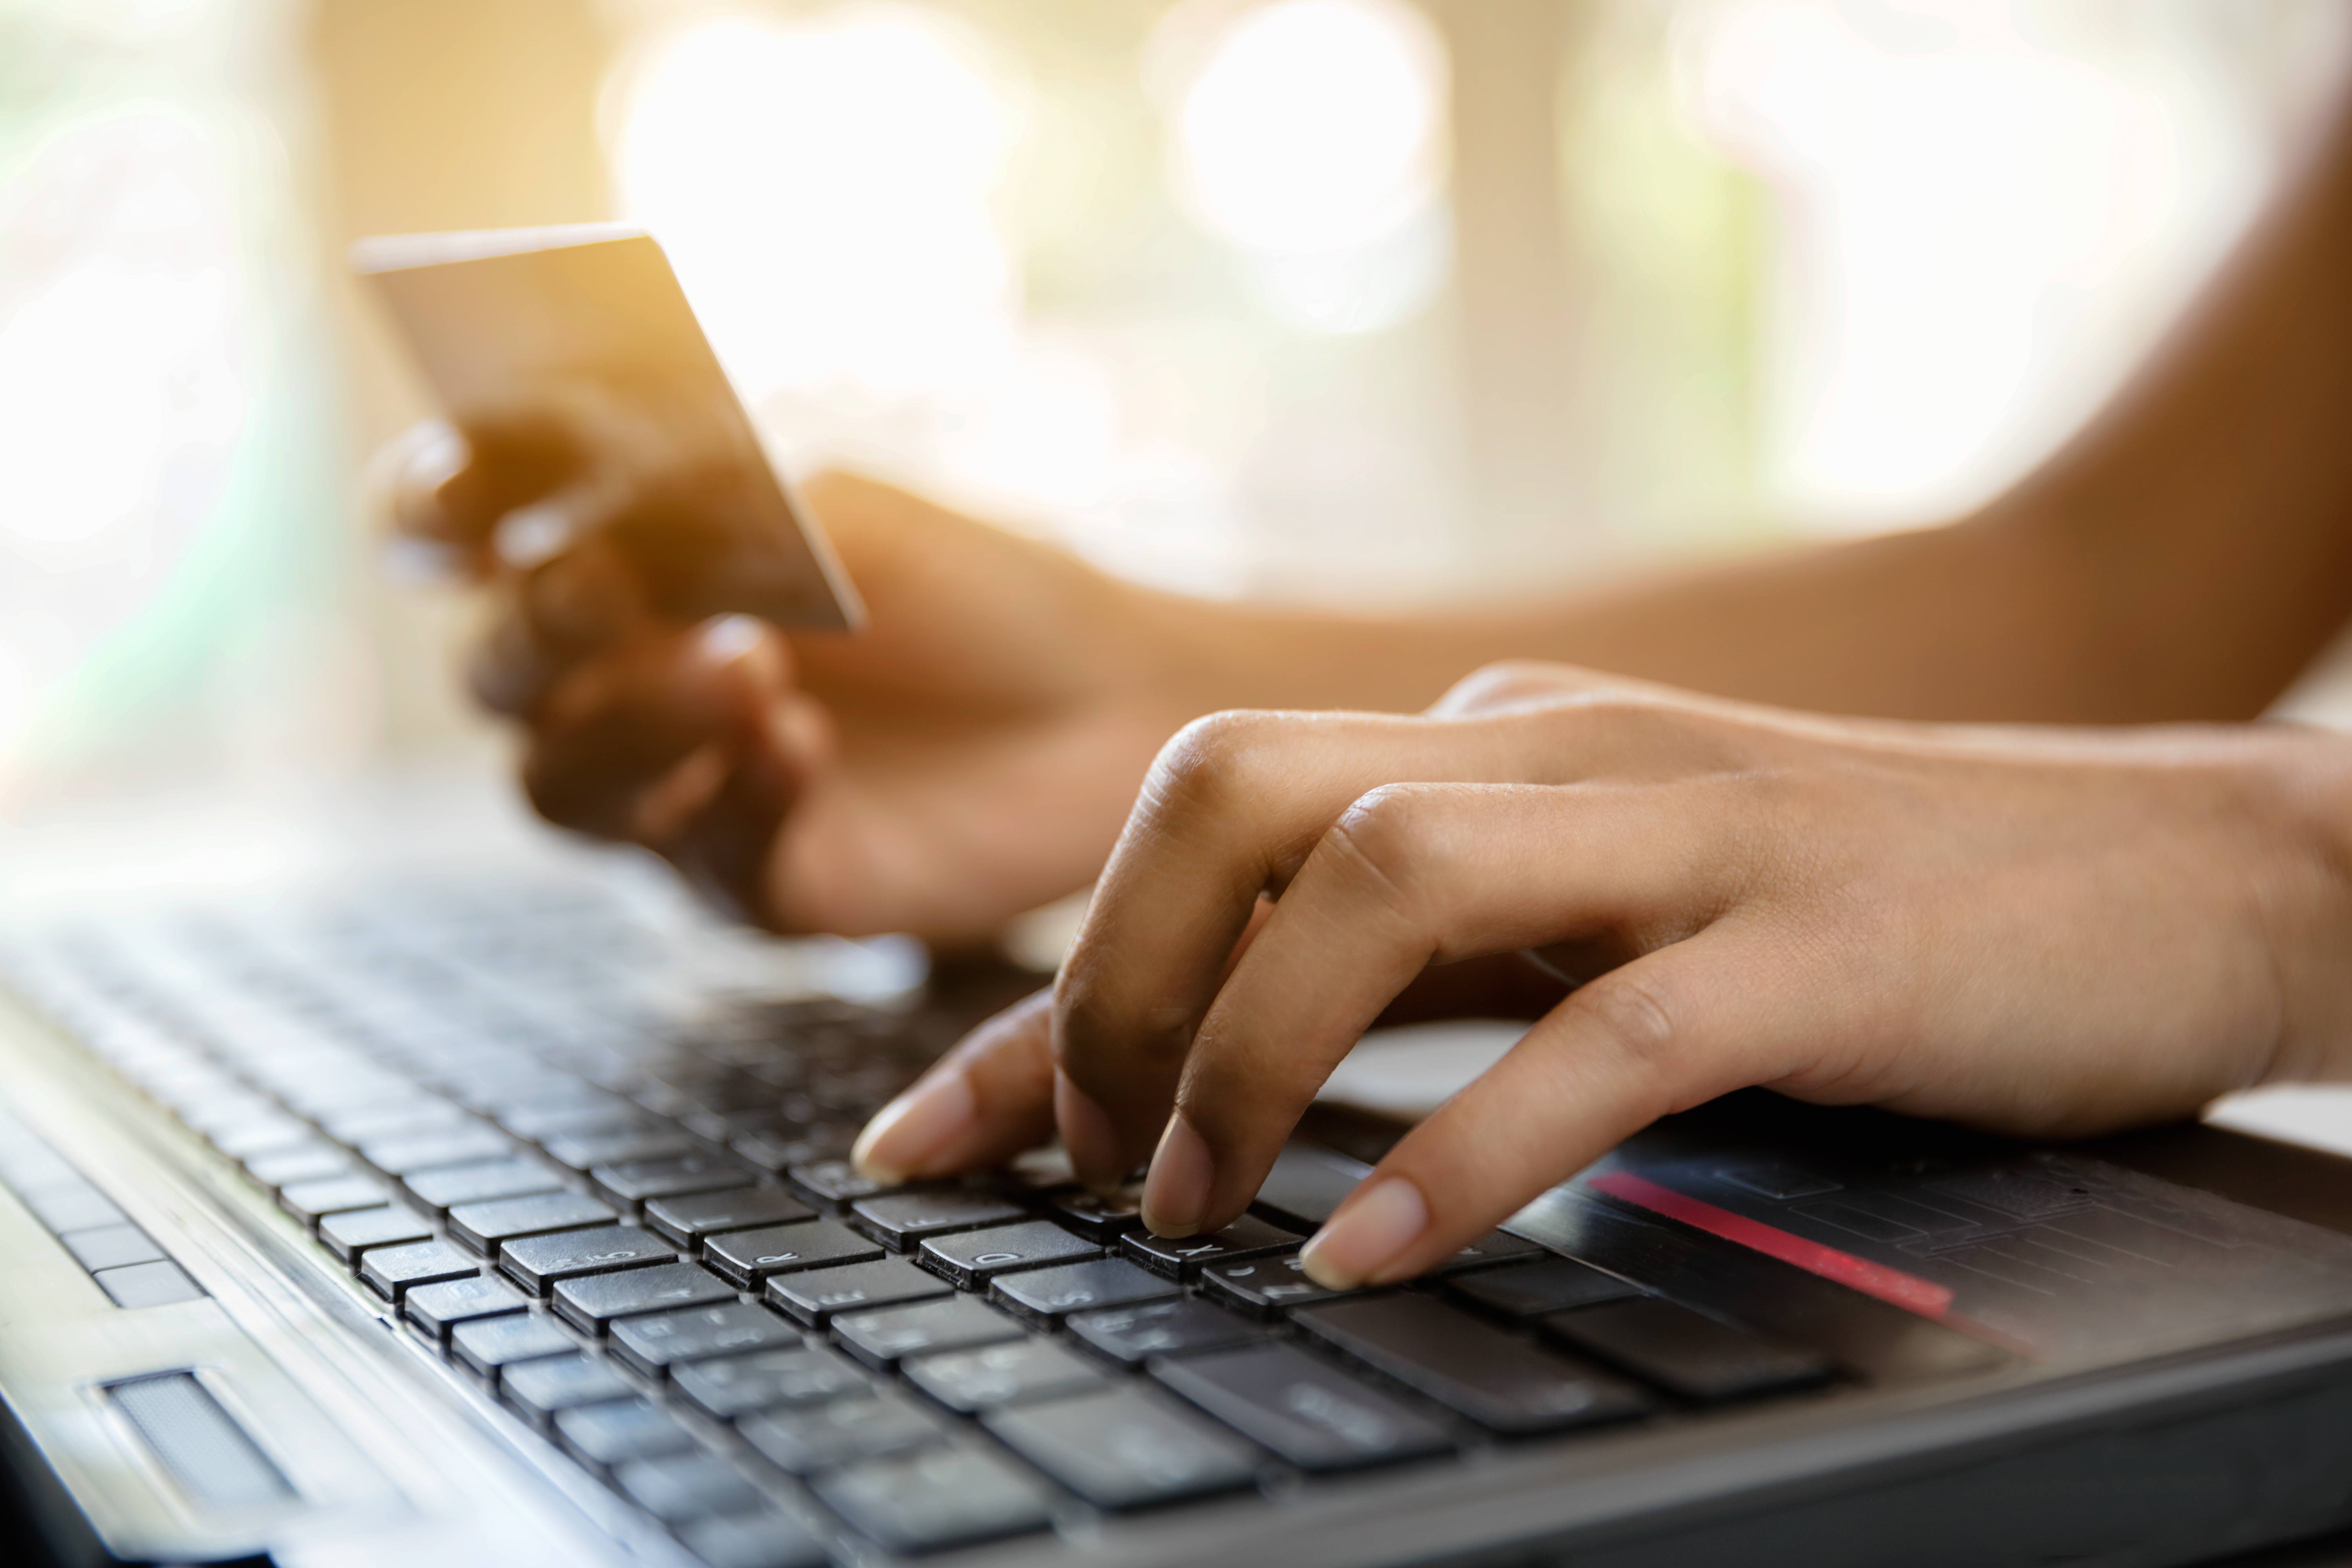 Imagen de manos sosteniendo una tarjeta de crédito y usando una computadora portátil para representar compras / comercio electrónico en línea.